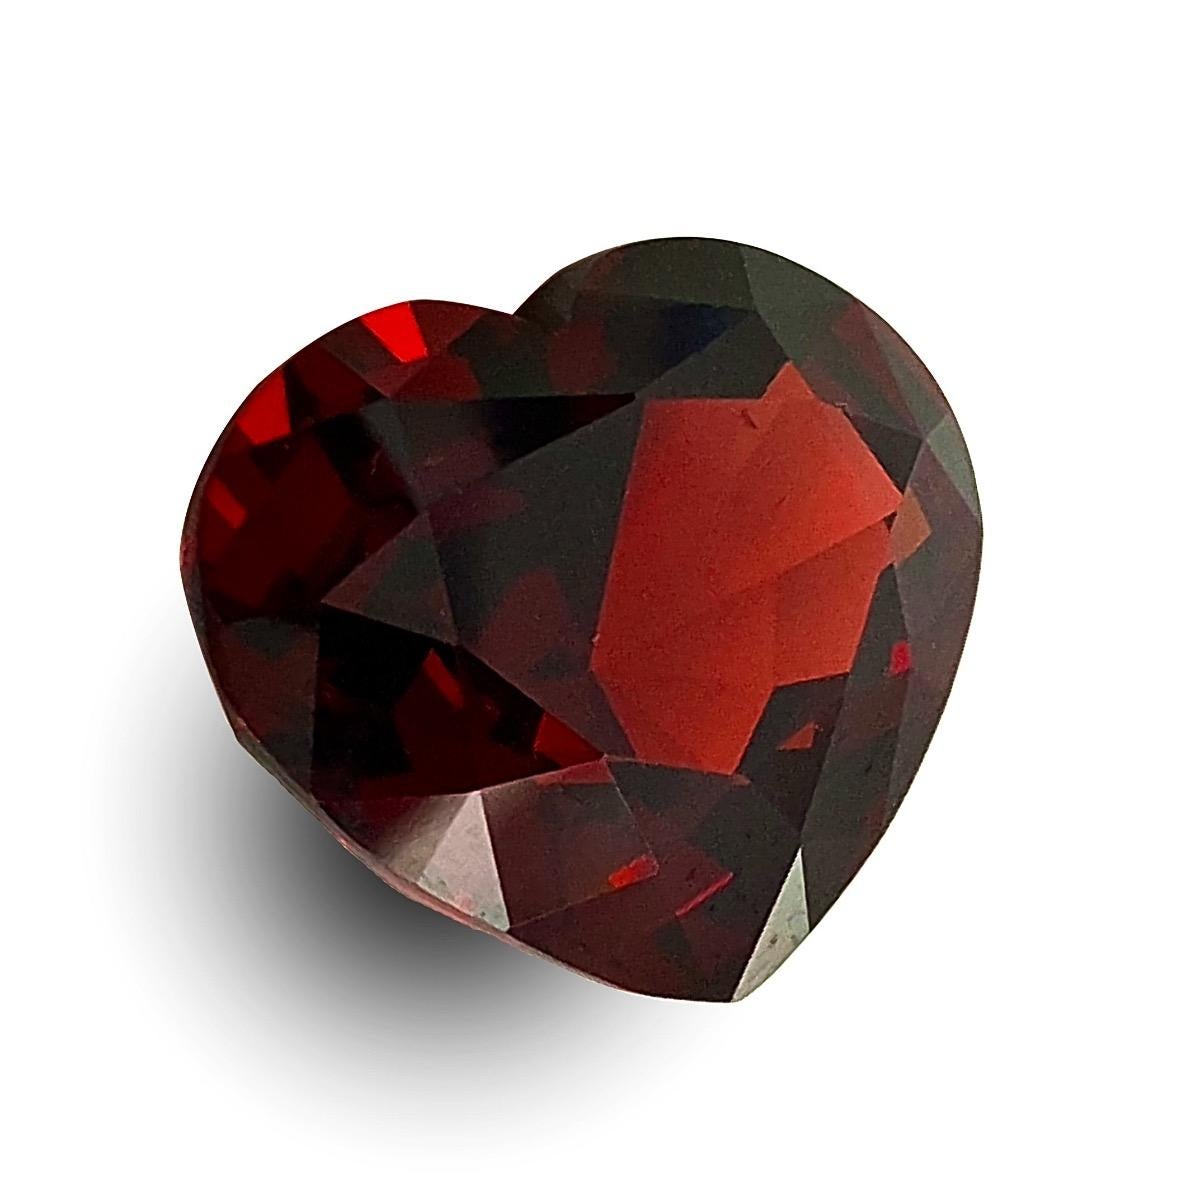 Façonné en forme de cœur, ce grenat naturel rouge riche de 19,42 carats est une gemme bien façonnée et d'une grande pureté. La couleur flatteuse de cette pierre précieuse symbolisera son style personnel et sa sophistication, ce qui est parfait pour